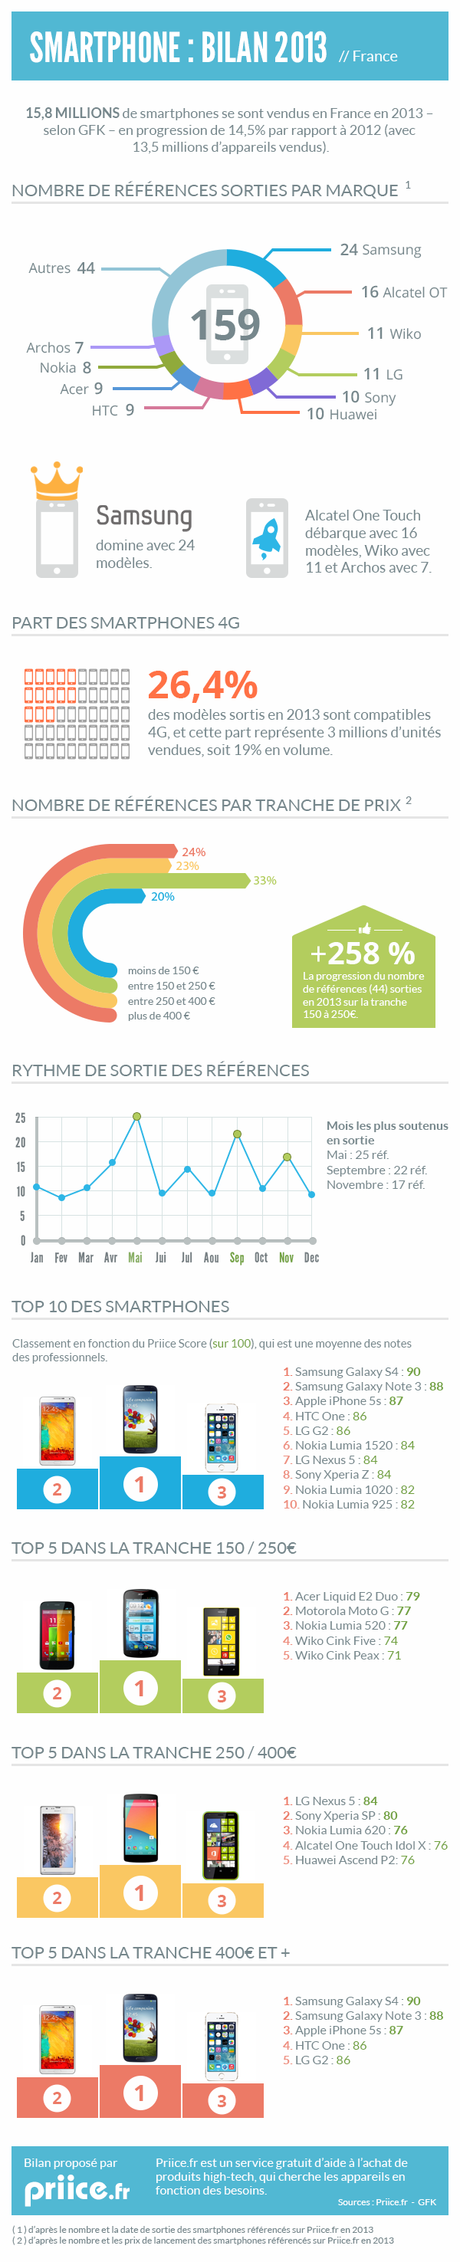 infographie bilan smartphones 2013